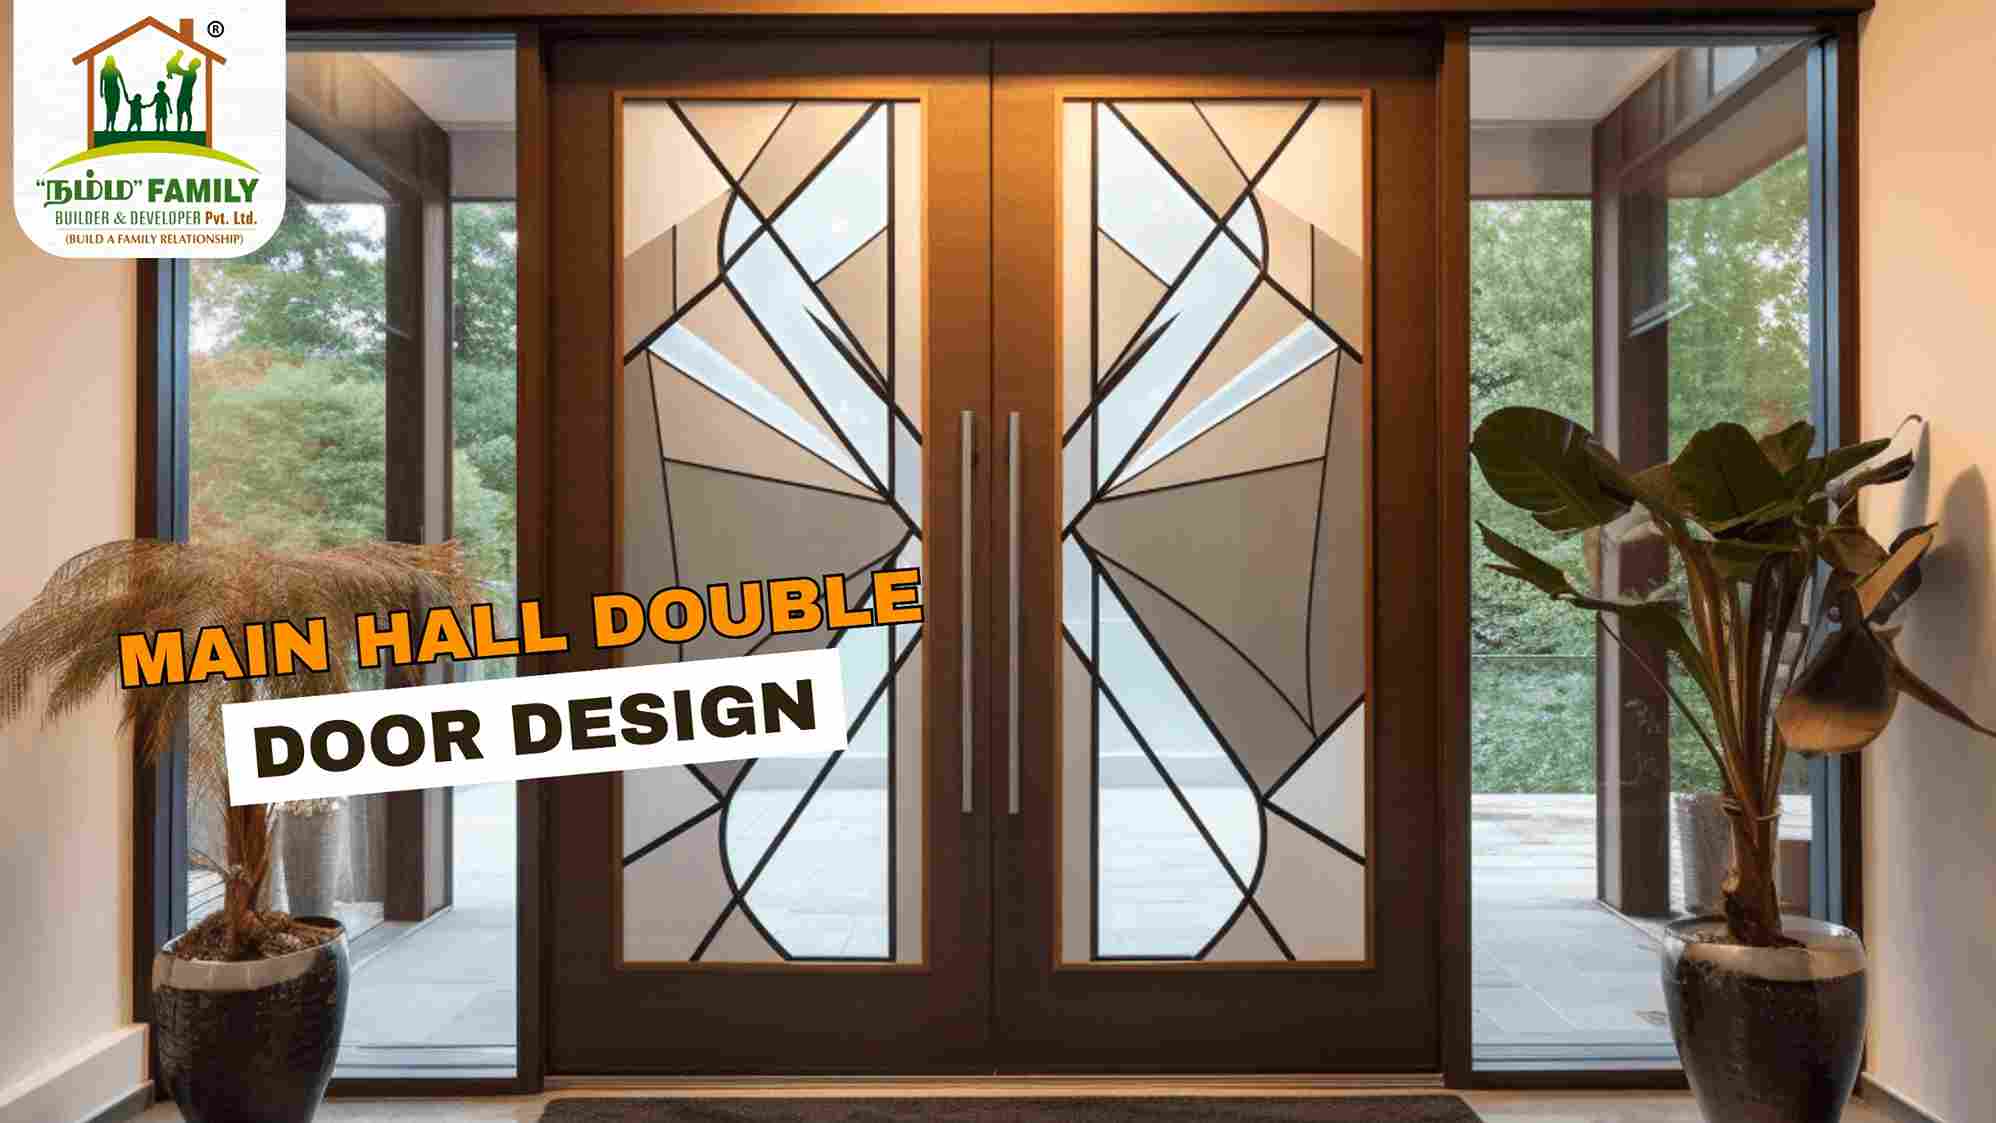 Main Hall Double Door Design - Namma Family Builder